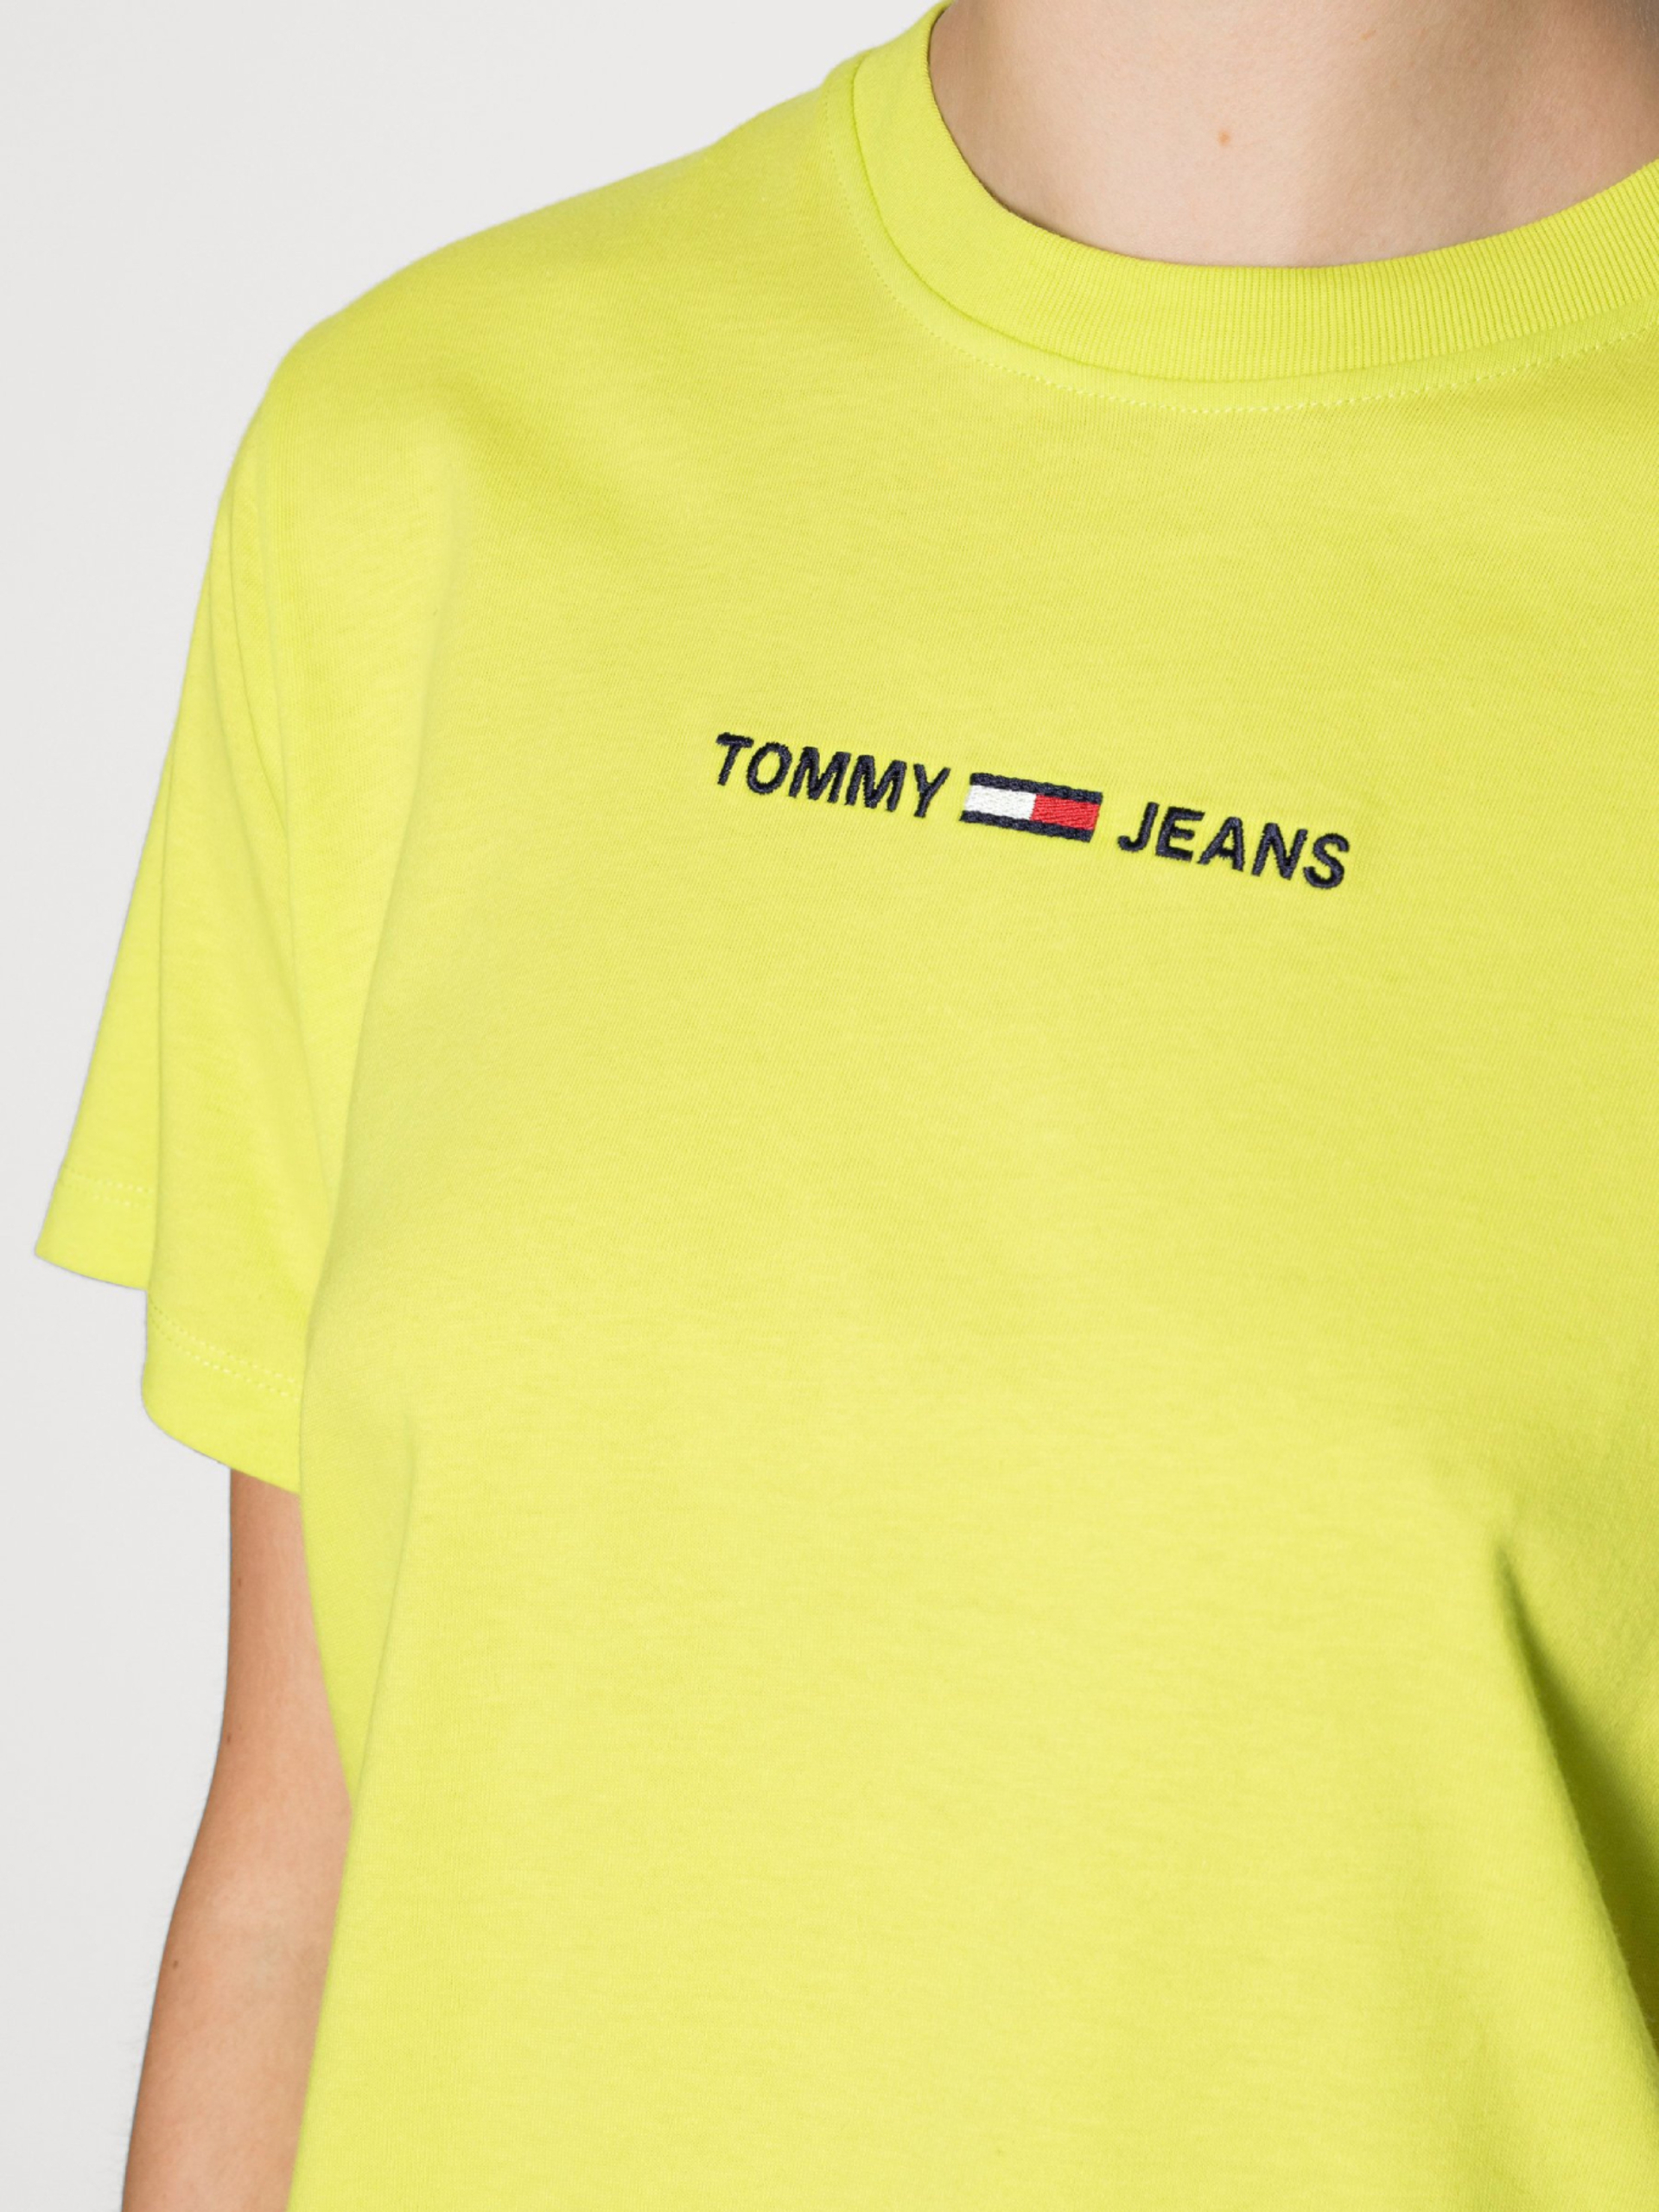 Tommy Jeans dámské neonové triko - M (LSE)